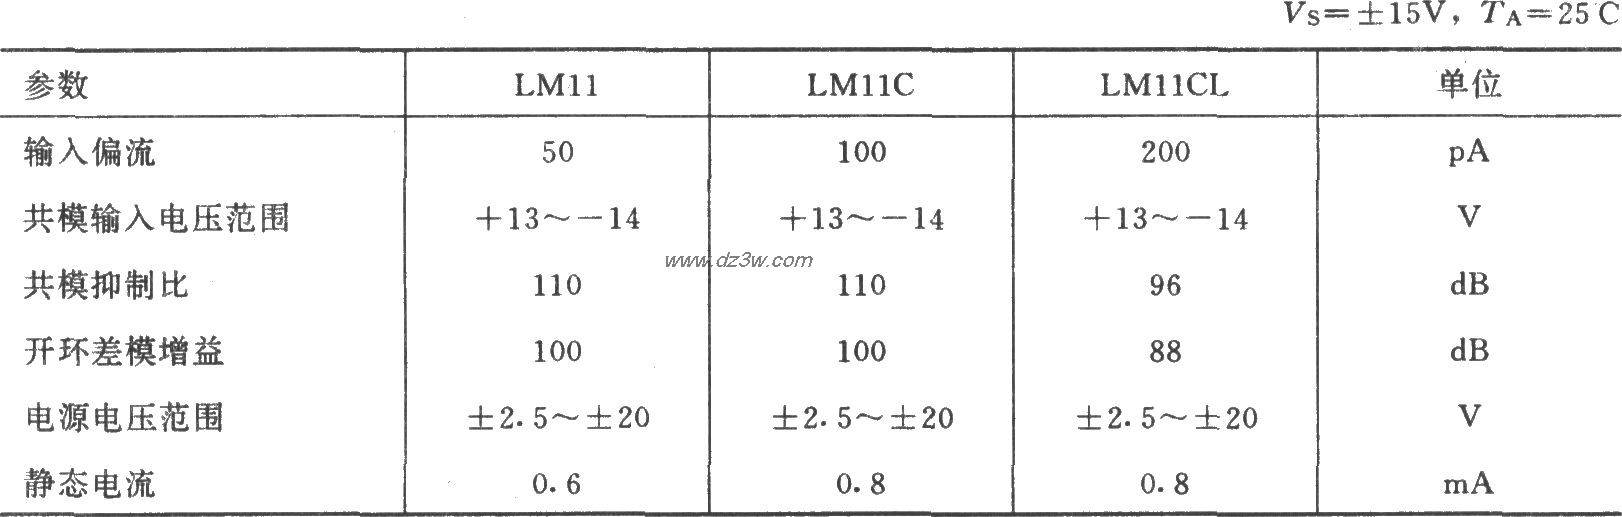 LM11集成運放的主要參數(典型值)